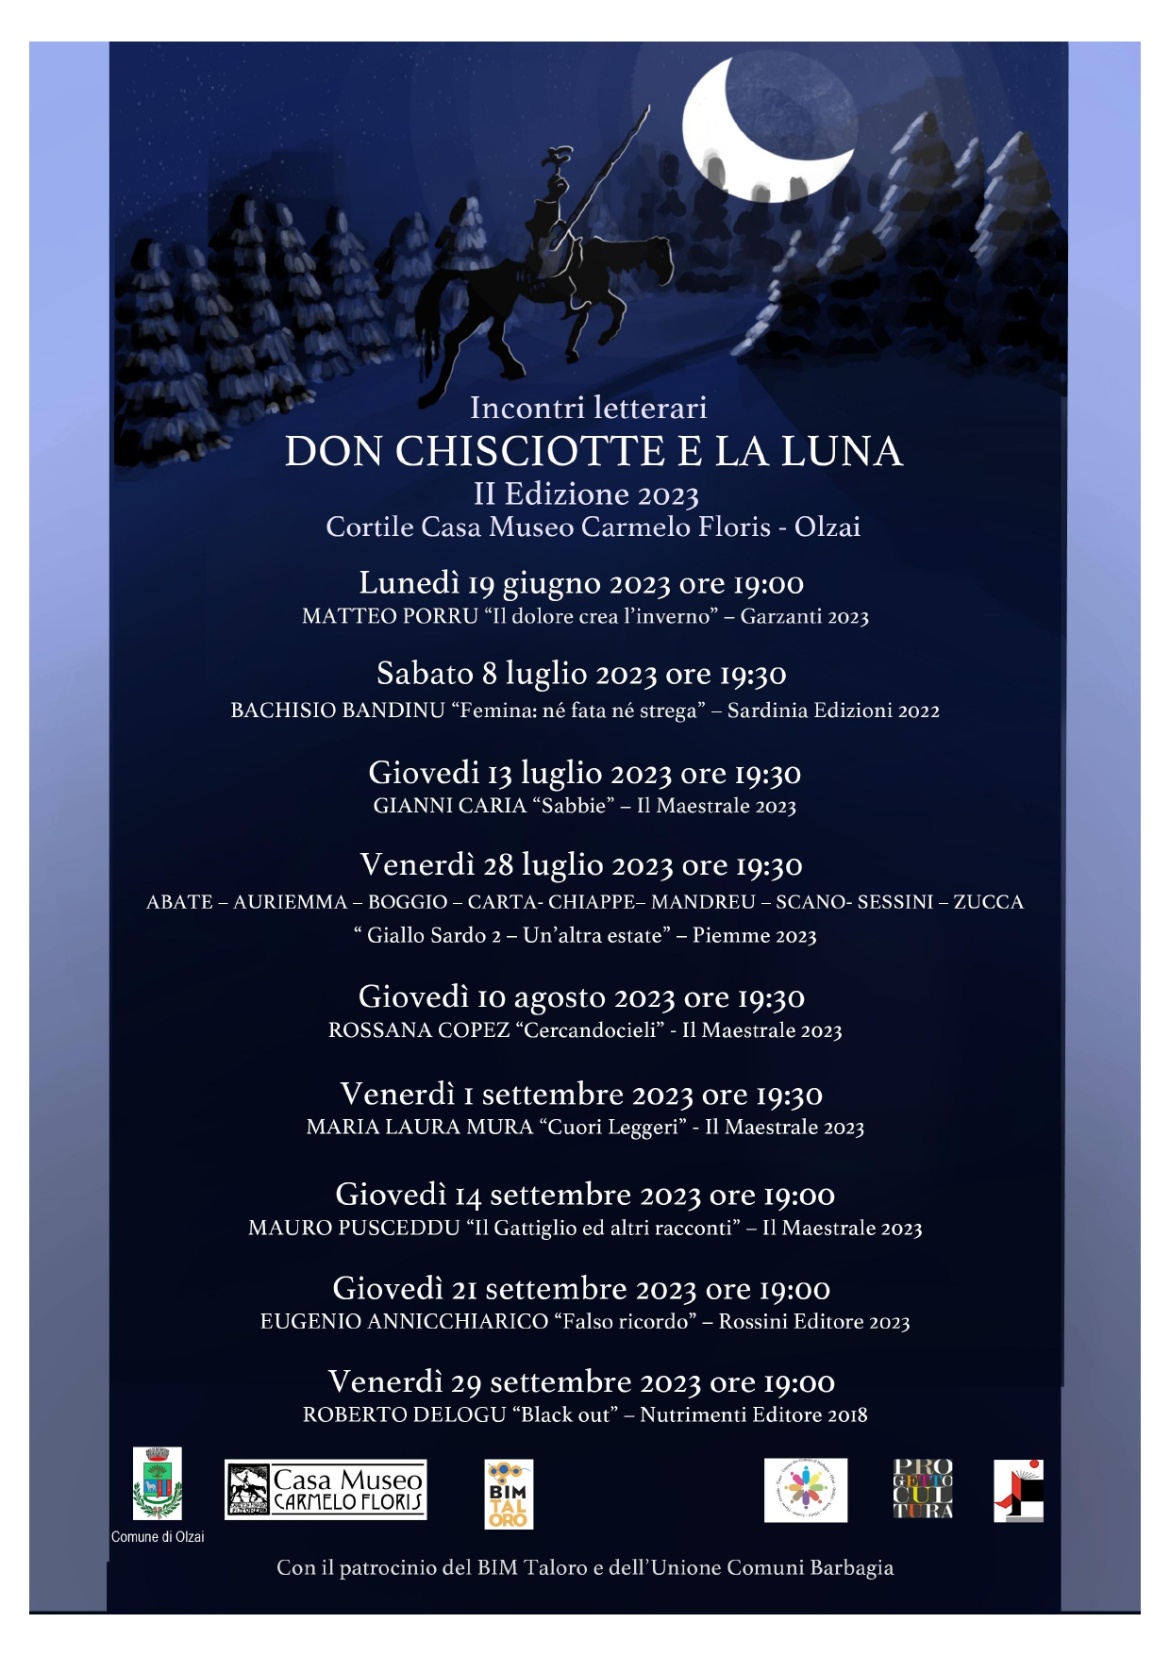 Visualizza la sezione: OLZAI| INCONTRI LETTERARI "DON CHISCIOTTE E LA LUNA - II Edizione 2023"